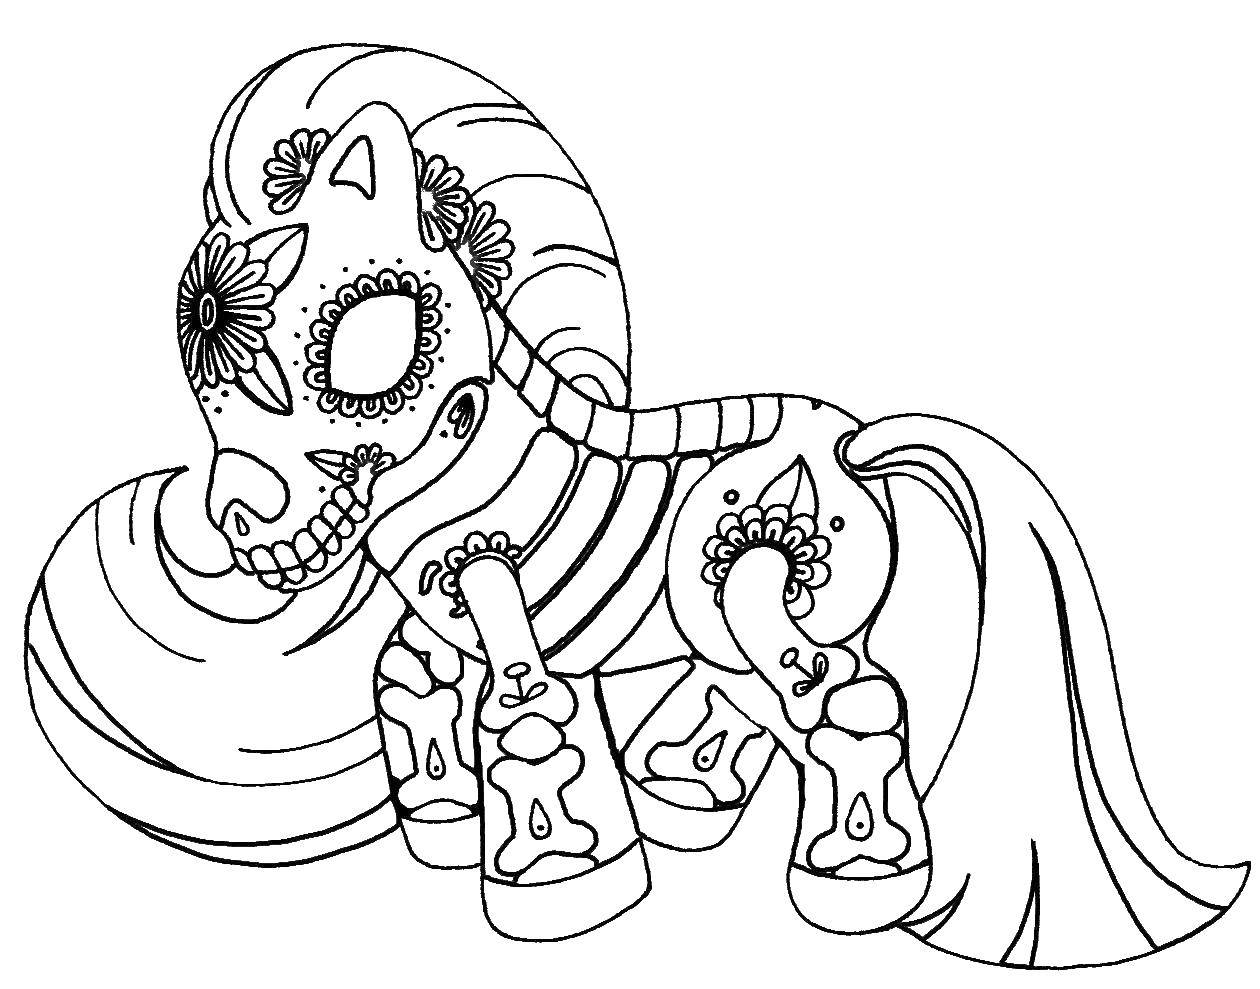 Название: Раскраска Пони из my little pony в узорах. Категория: узоры. Теги: Пони, My little pony .